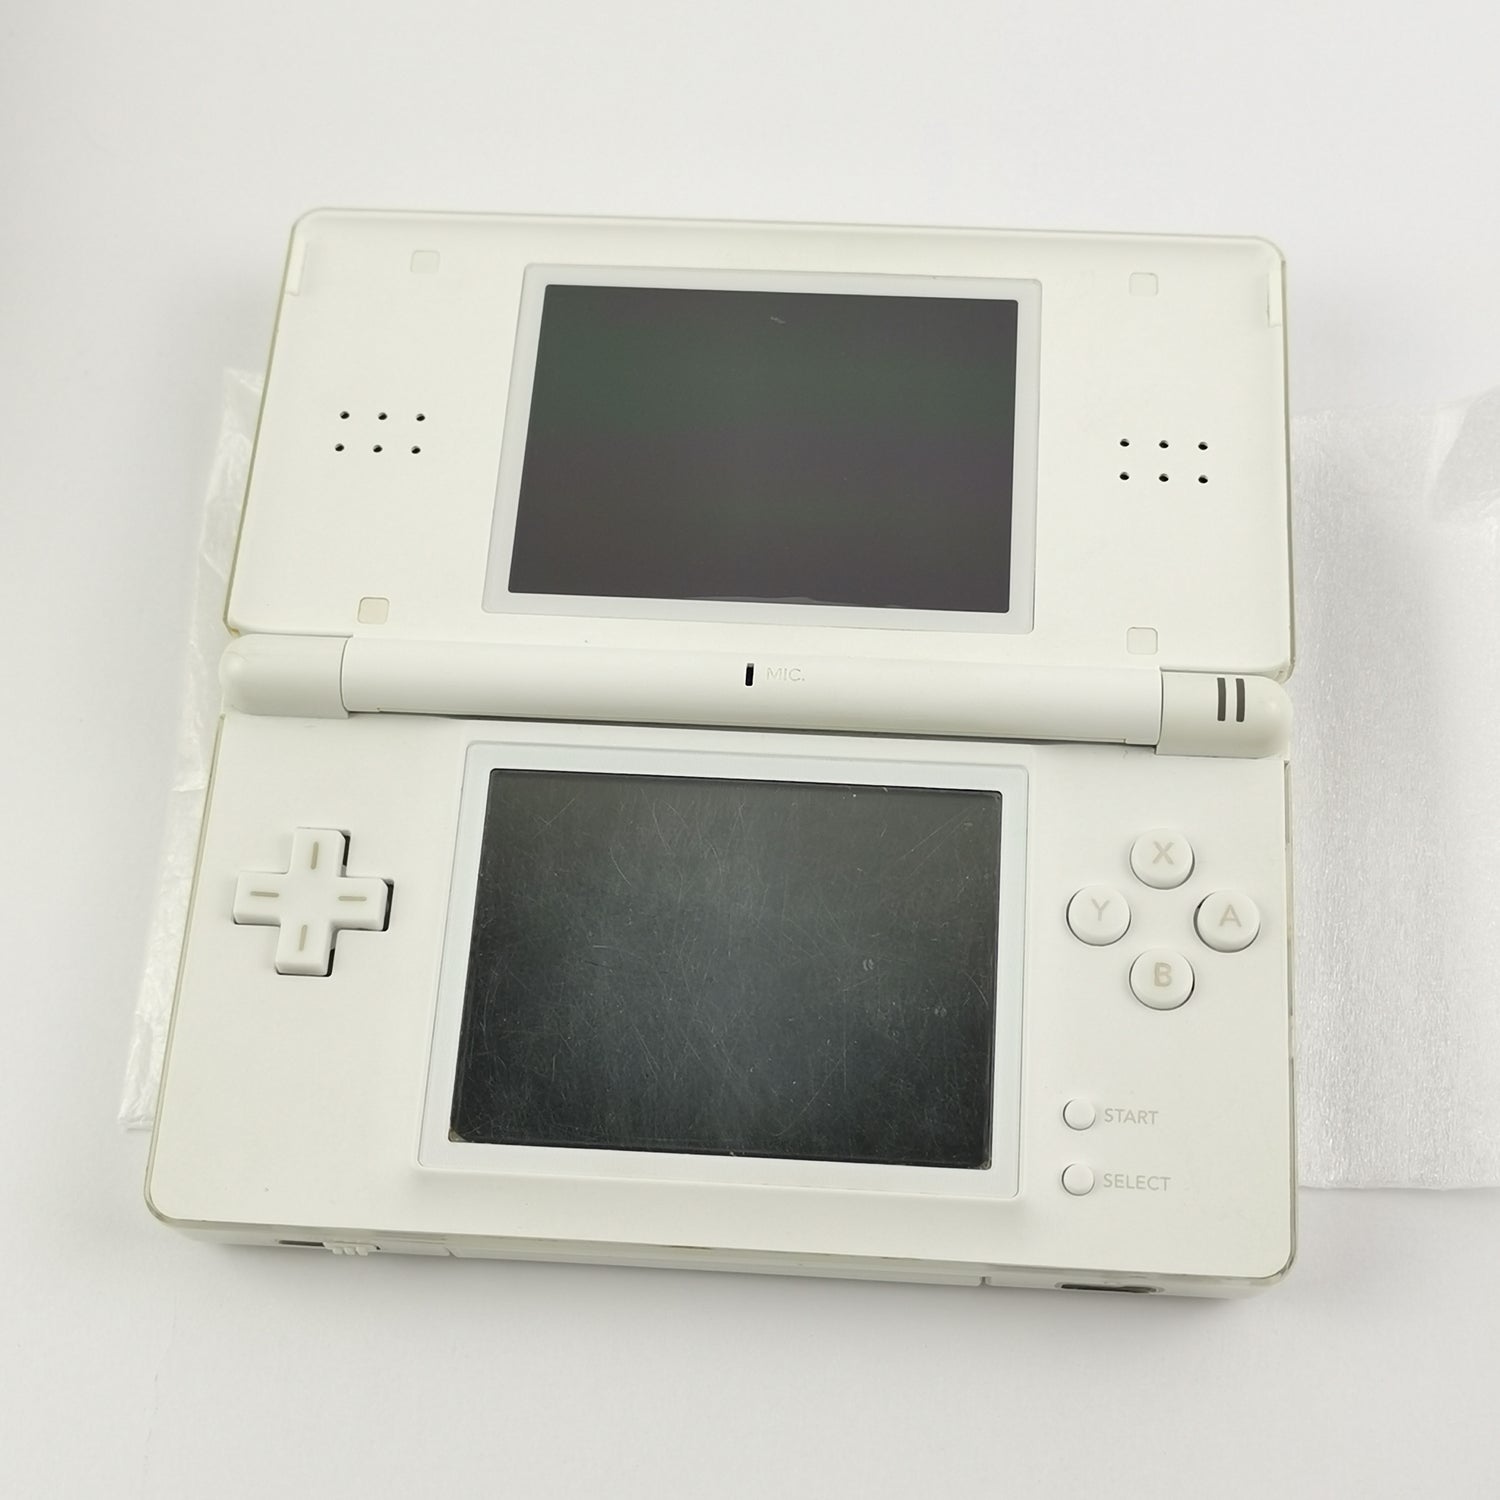 Nintendo DS Lite Konsole Weiss in OVP - Teildefekt